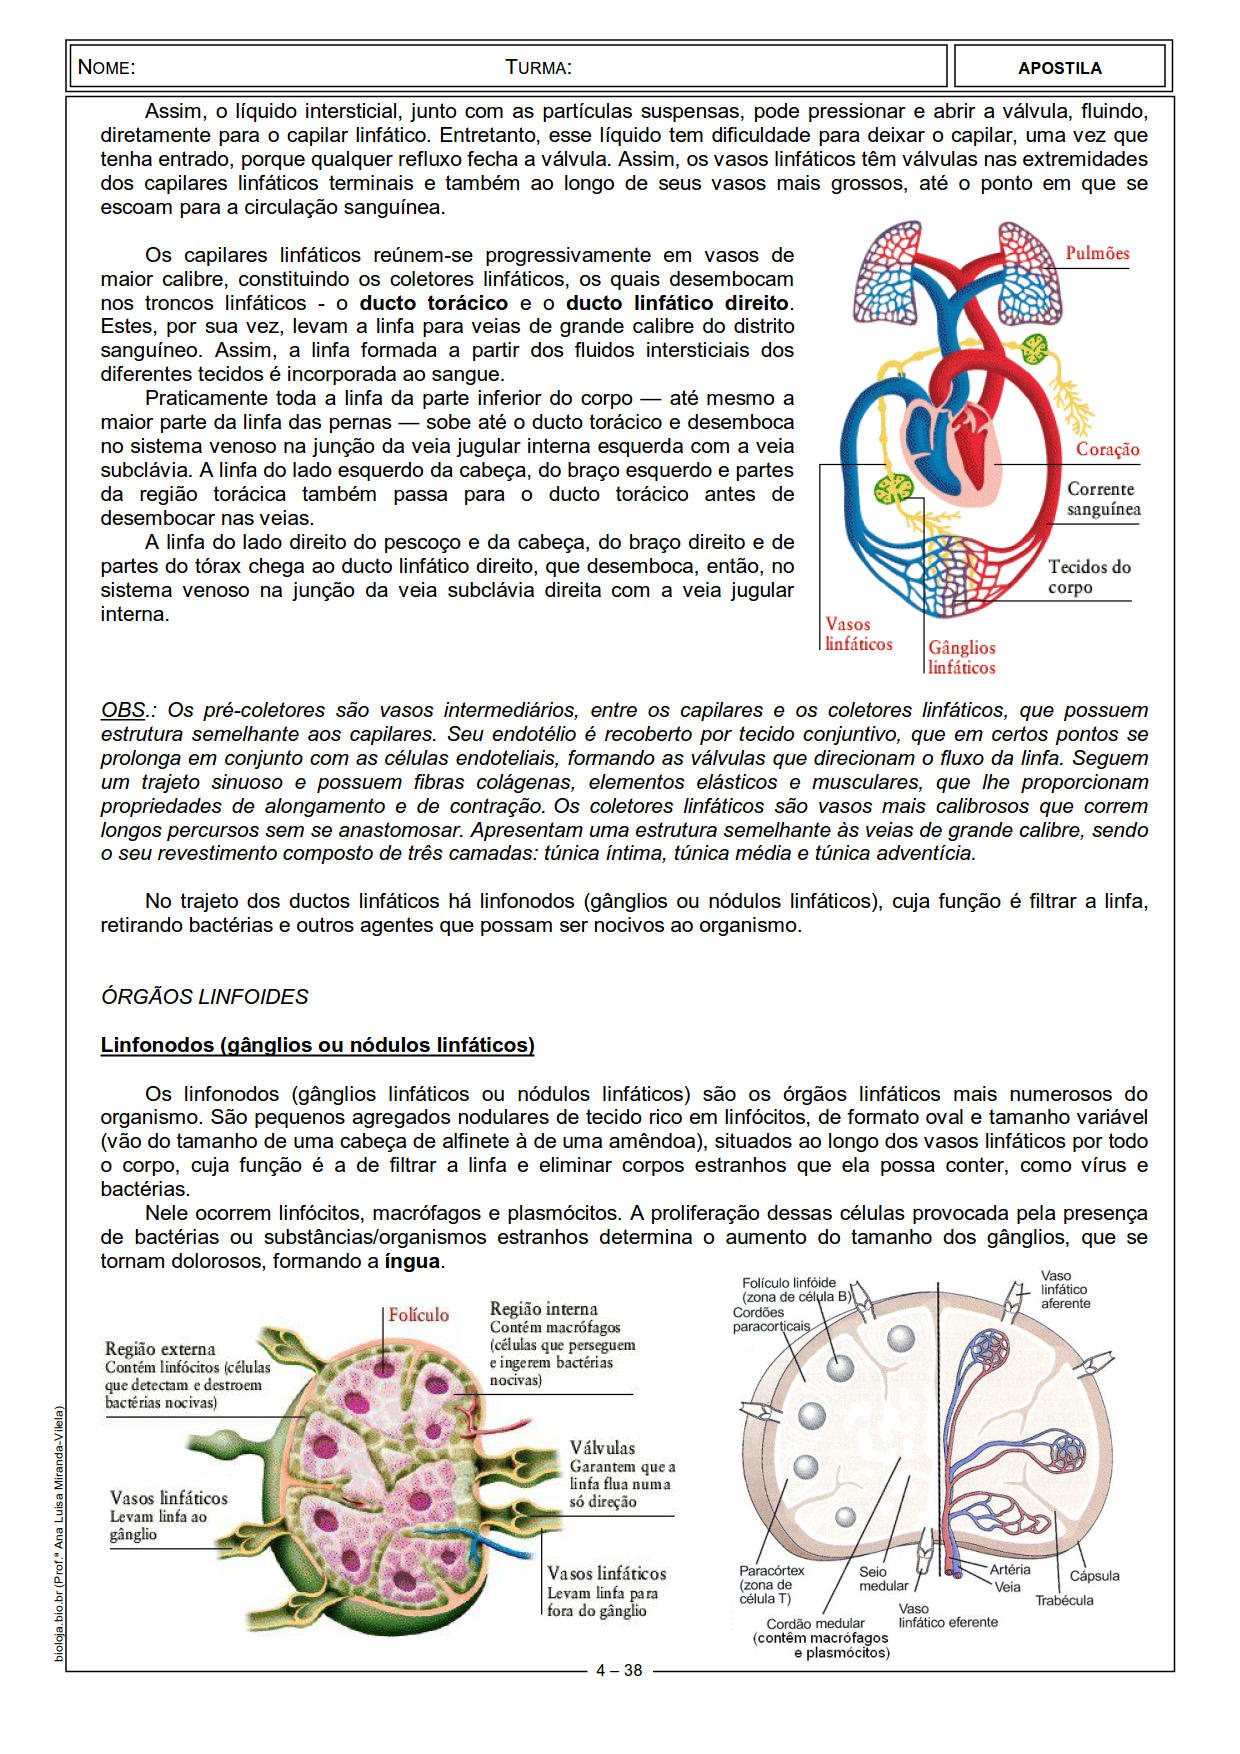 Apostila Fisiologia de órgãos e sistema II: sistemas linfático e imunitário slide 4